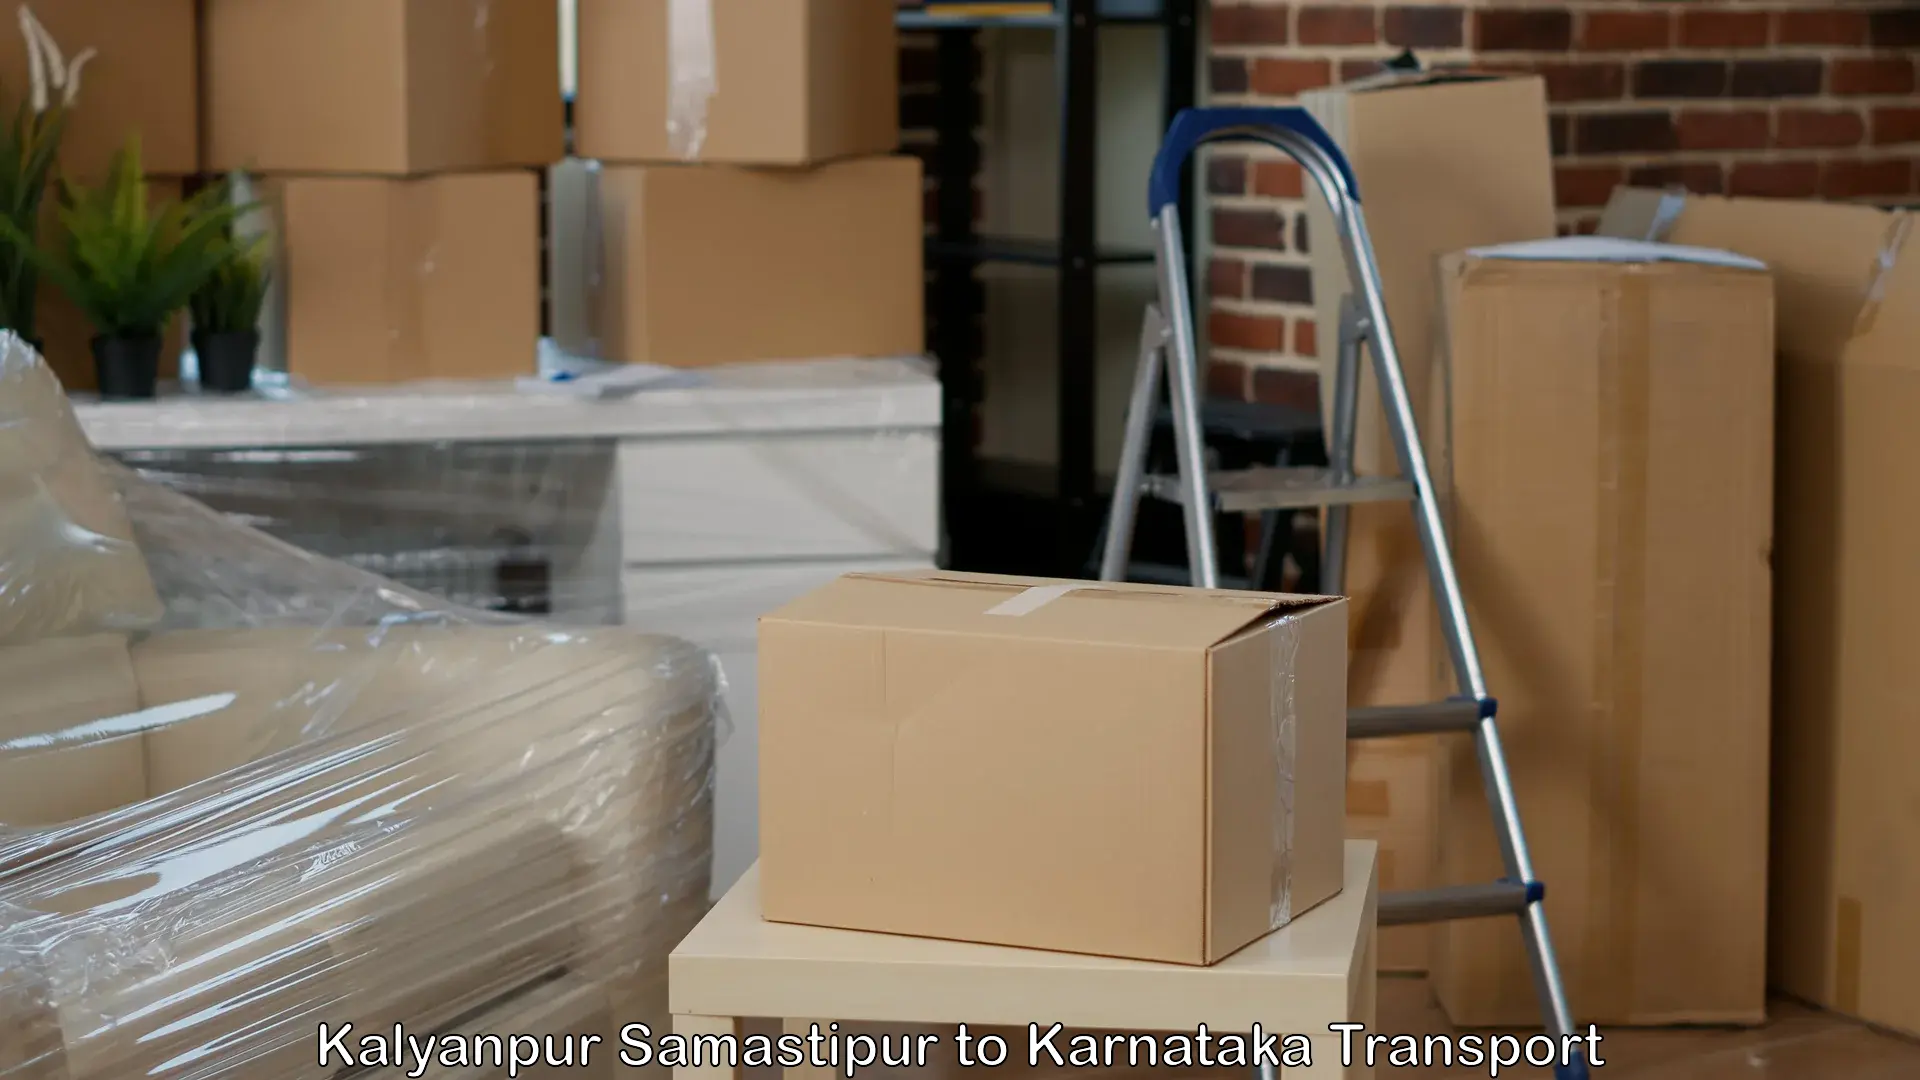 Furniture transport service Kalyanpur Samastipur to Munavalli